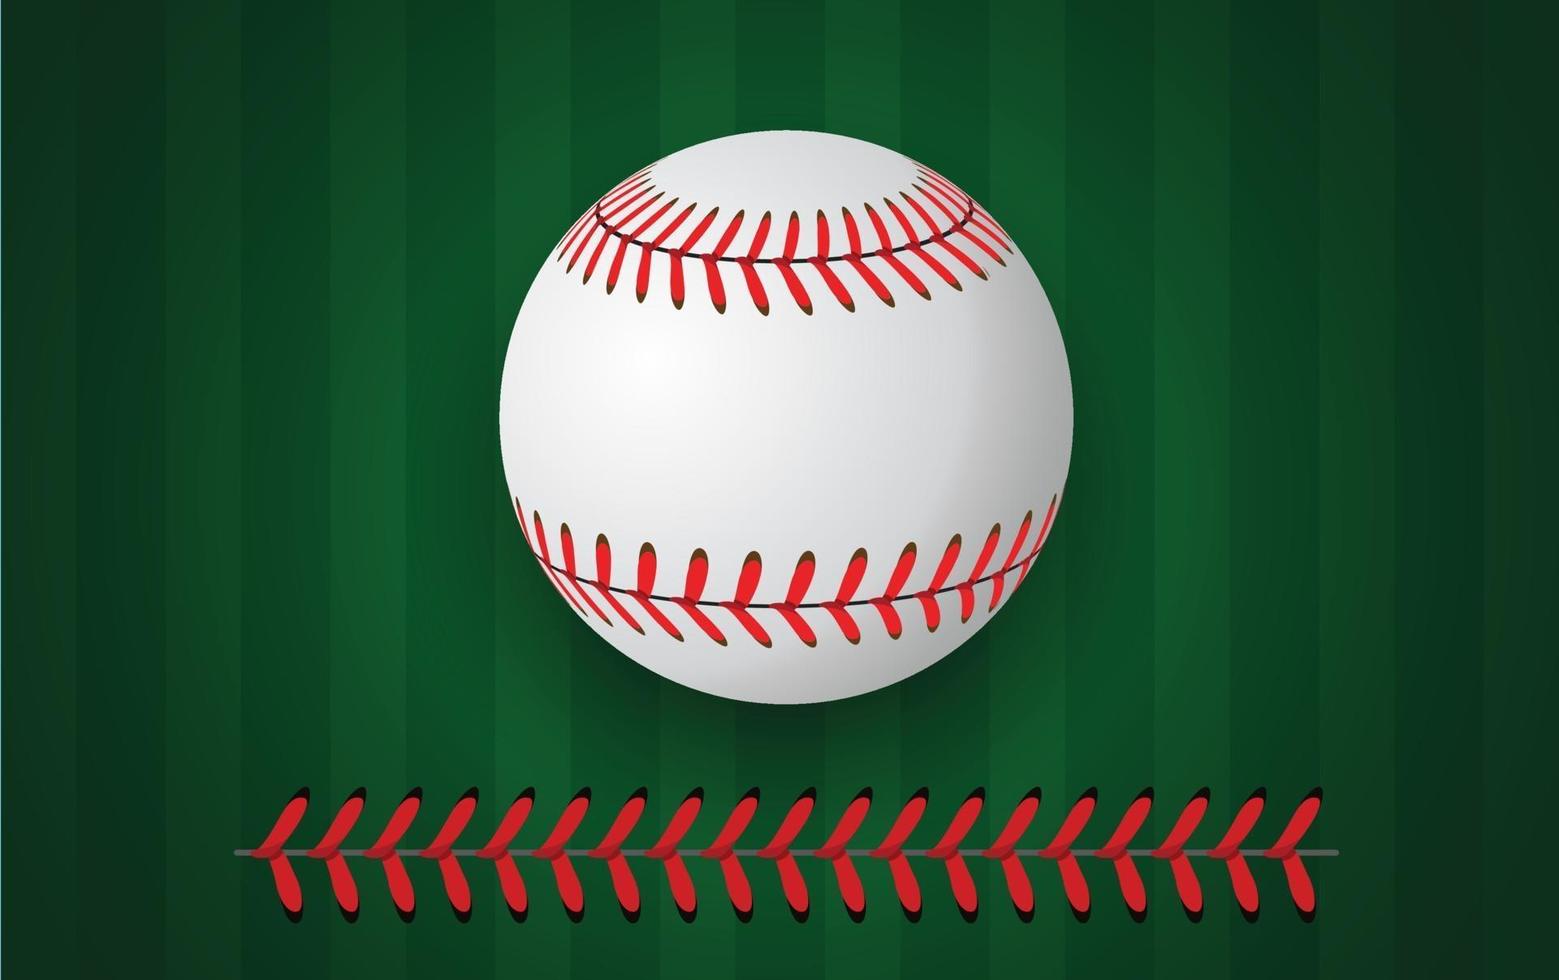 Baseballstiche auf grünem Hintergrund vektor